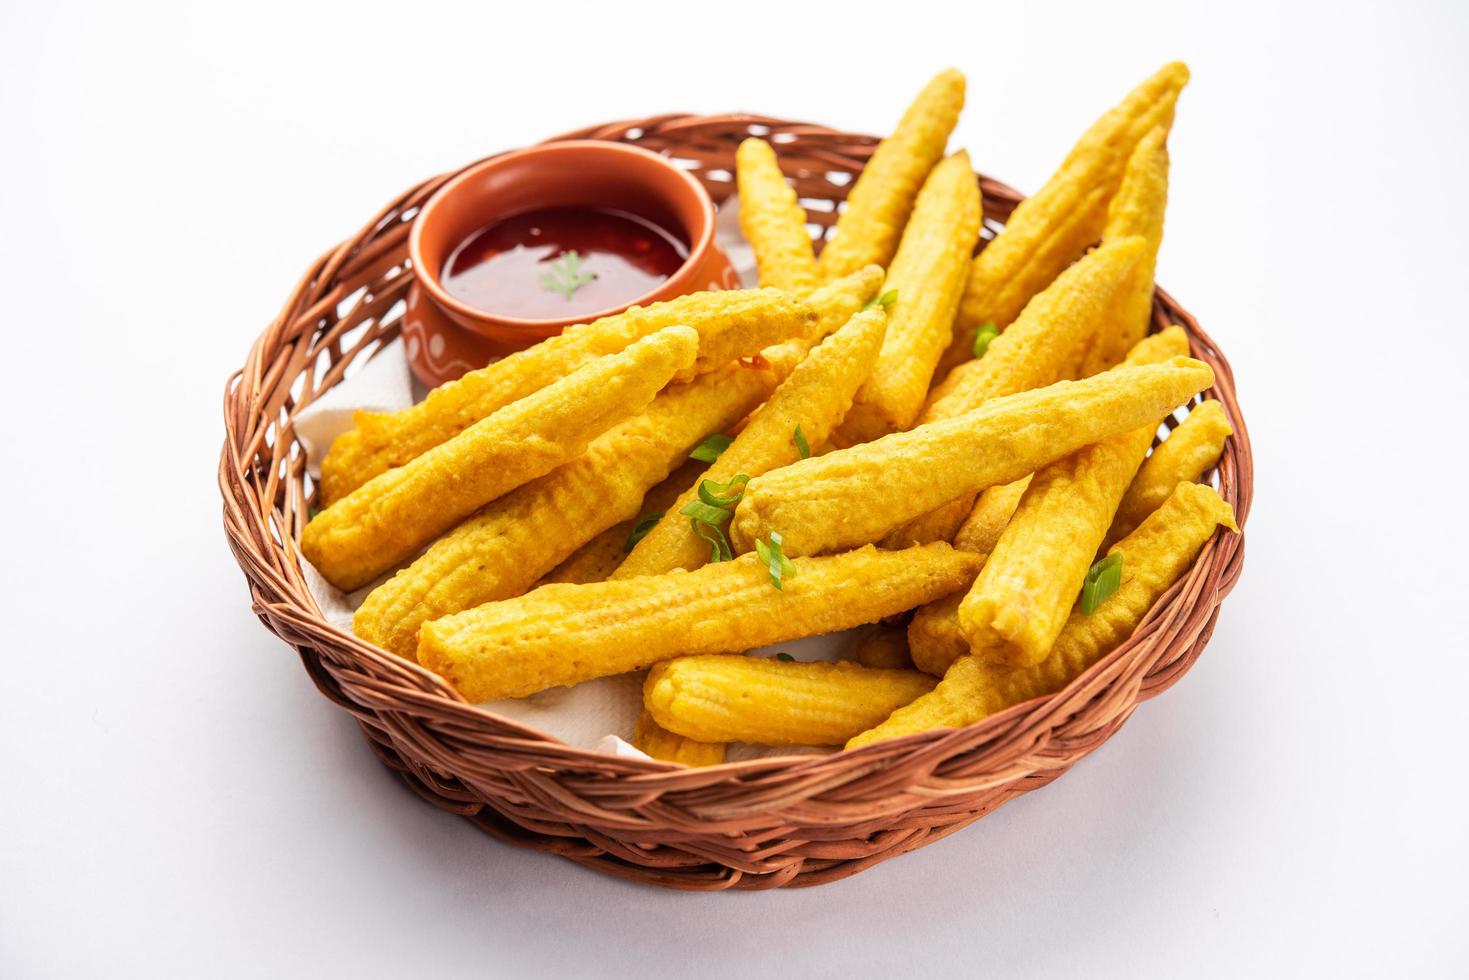 pakoda de maïs frit croustillant, pakora ou beignets de maïs de bébé servis avec du ketchup, cuisine indienne photo